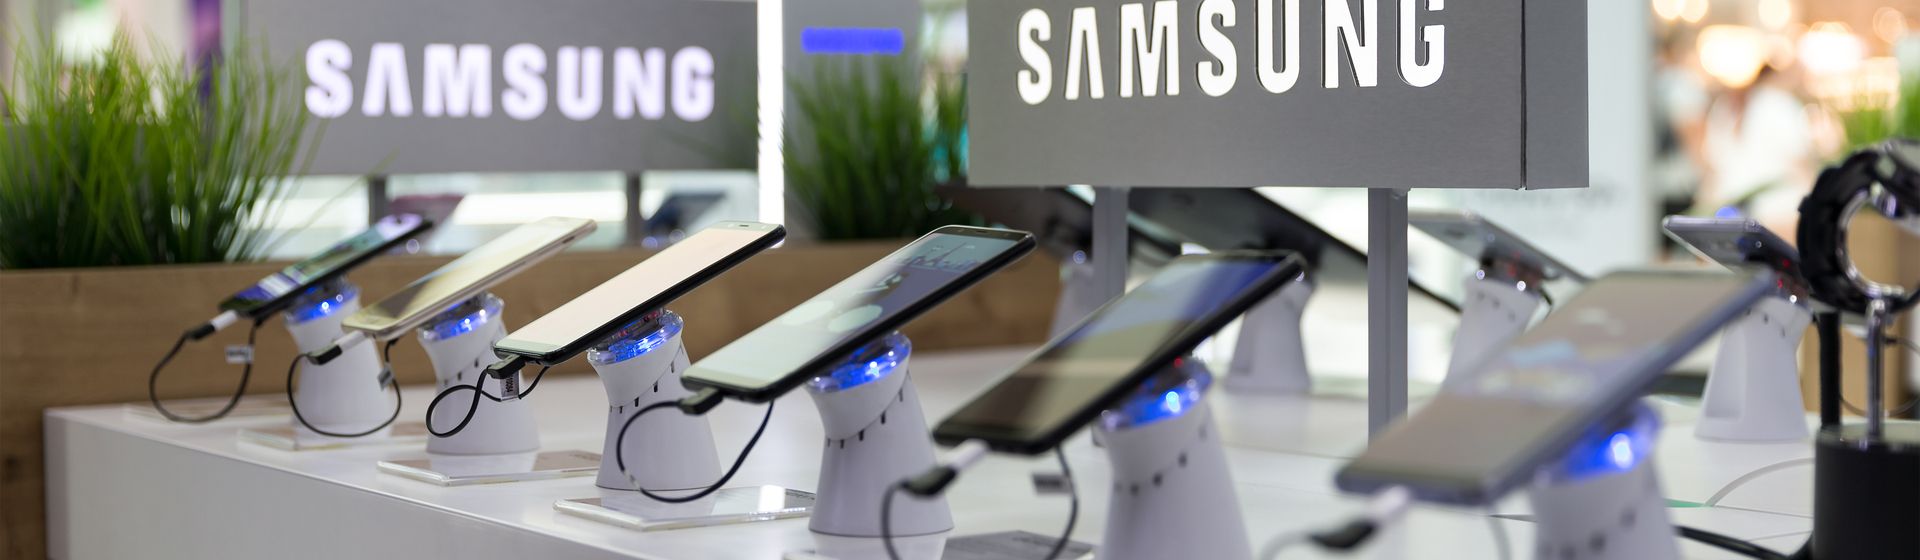 Celulares Samsung baratos: os melhores modelos em 2021